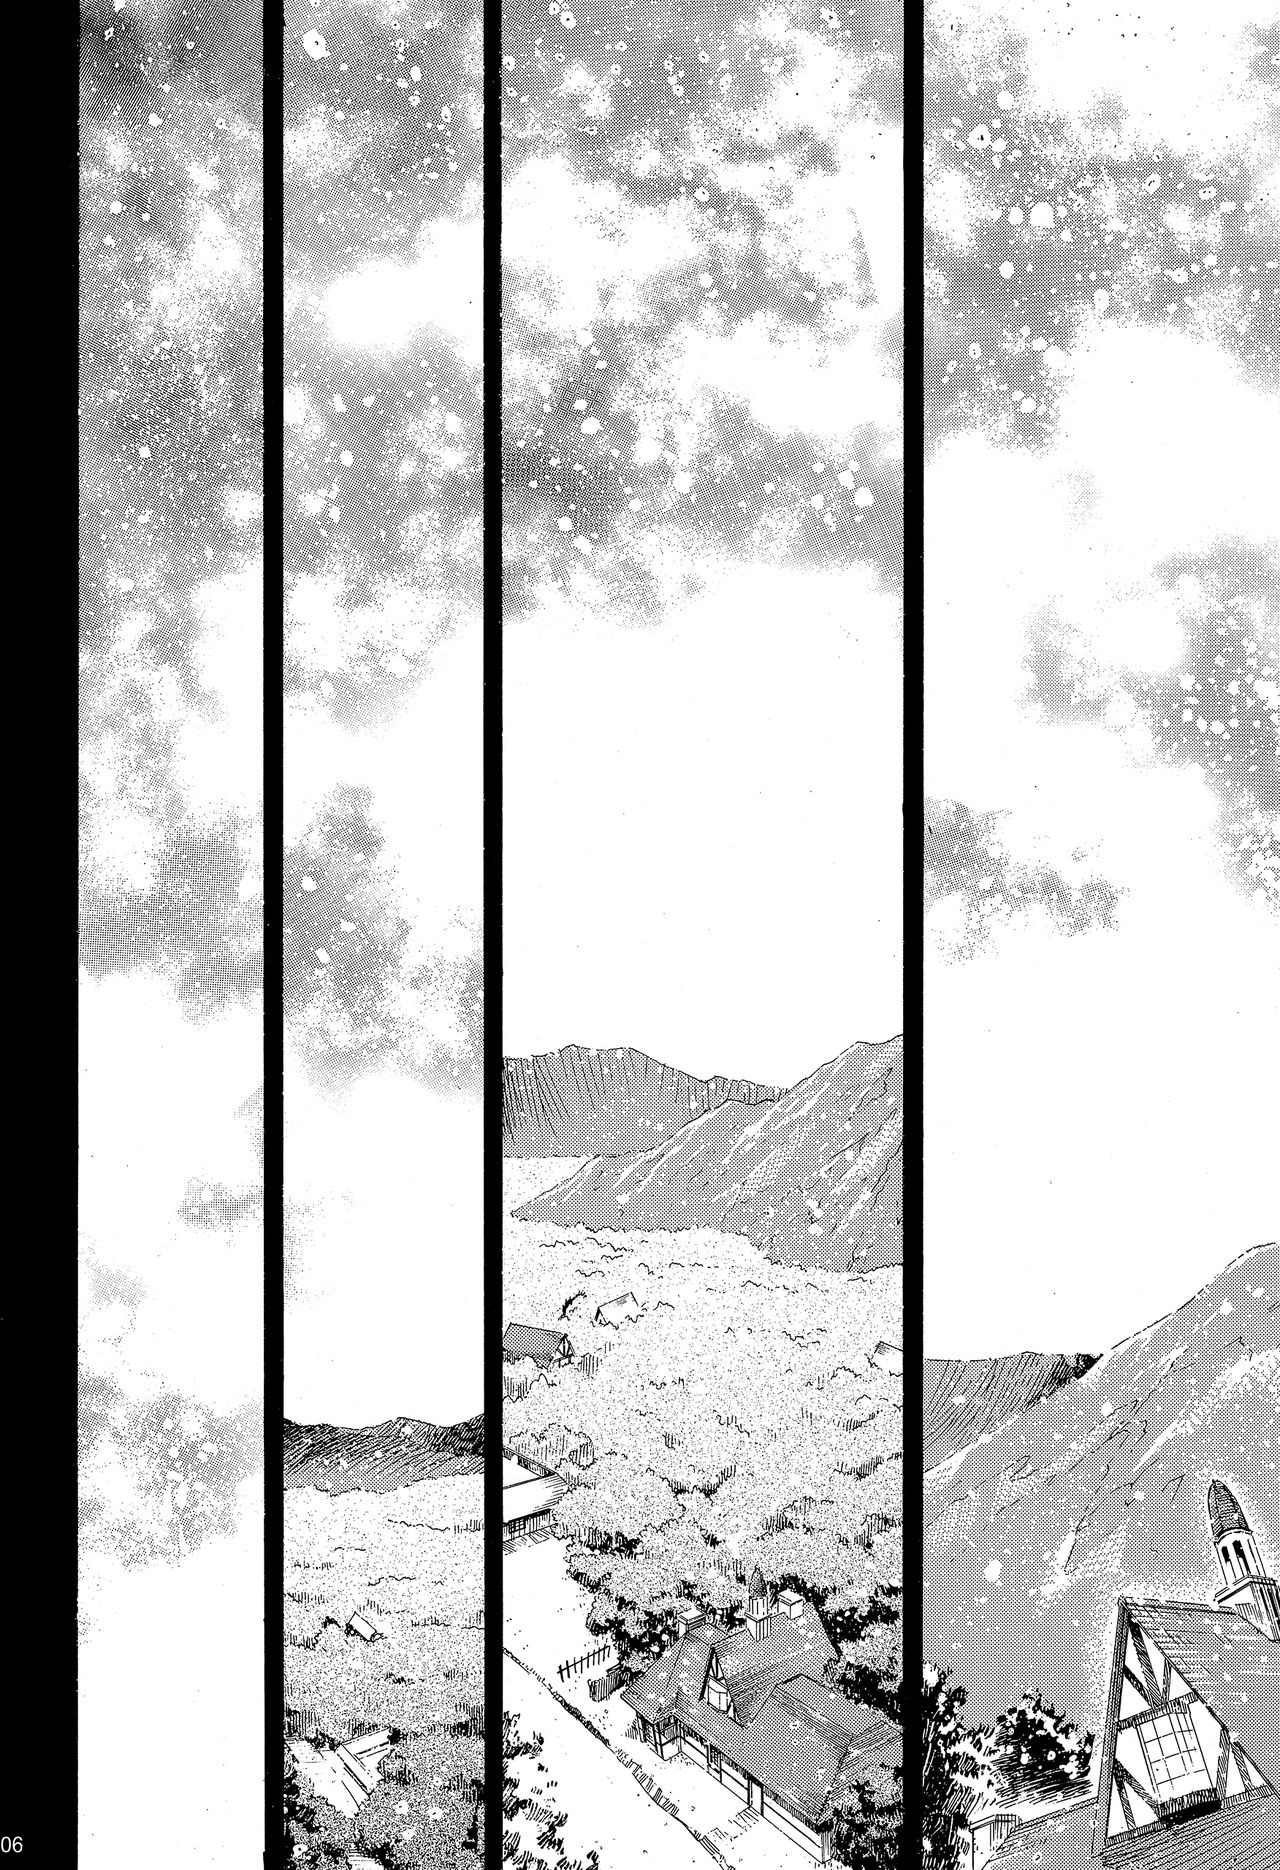 [スタジオKIMIGABUCHI (きみまる)] RE-TAKE ～After～ (新世紀エヴァンゲリオン) [DL版]